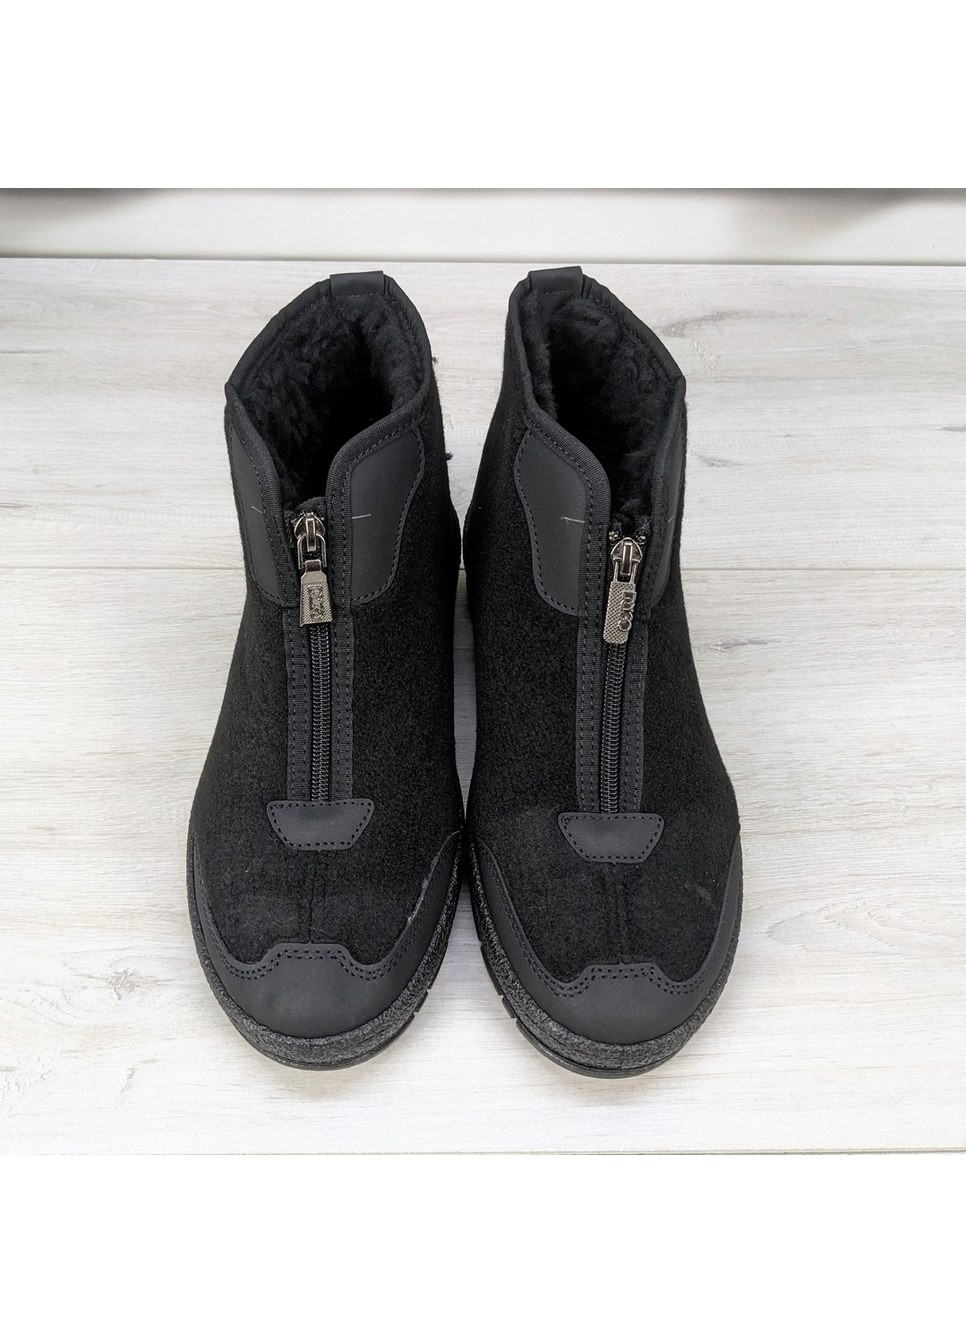 Черные зимние ботинки мужские войлочные бурки зимние на меху Dago